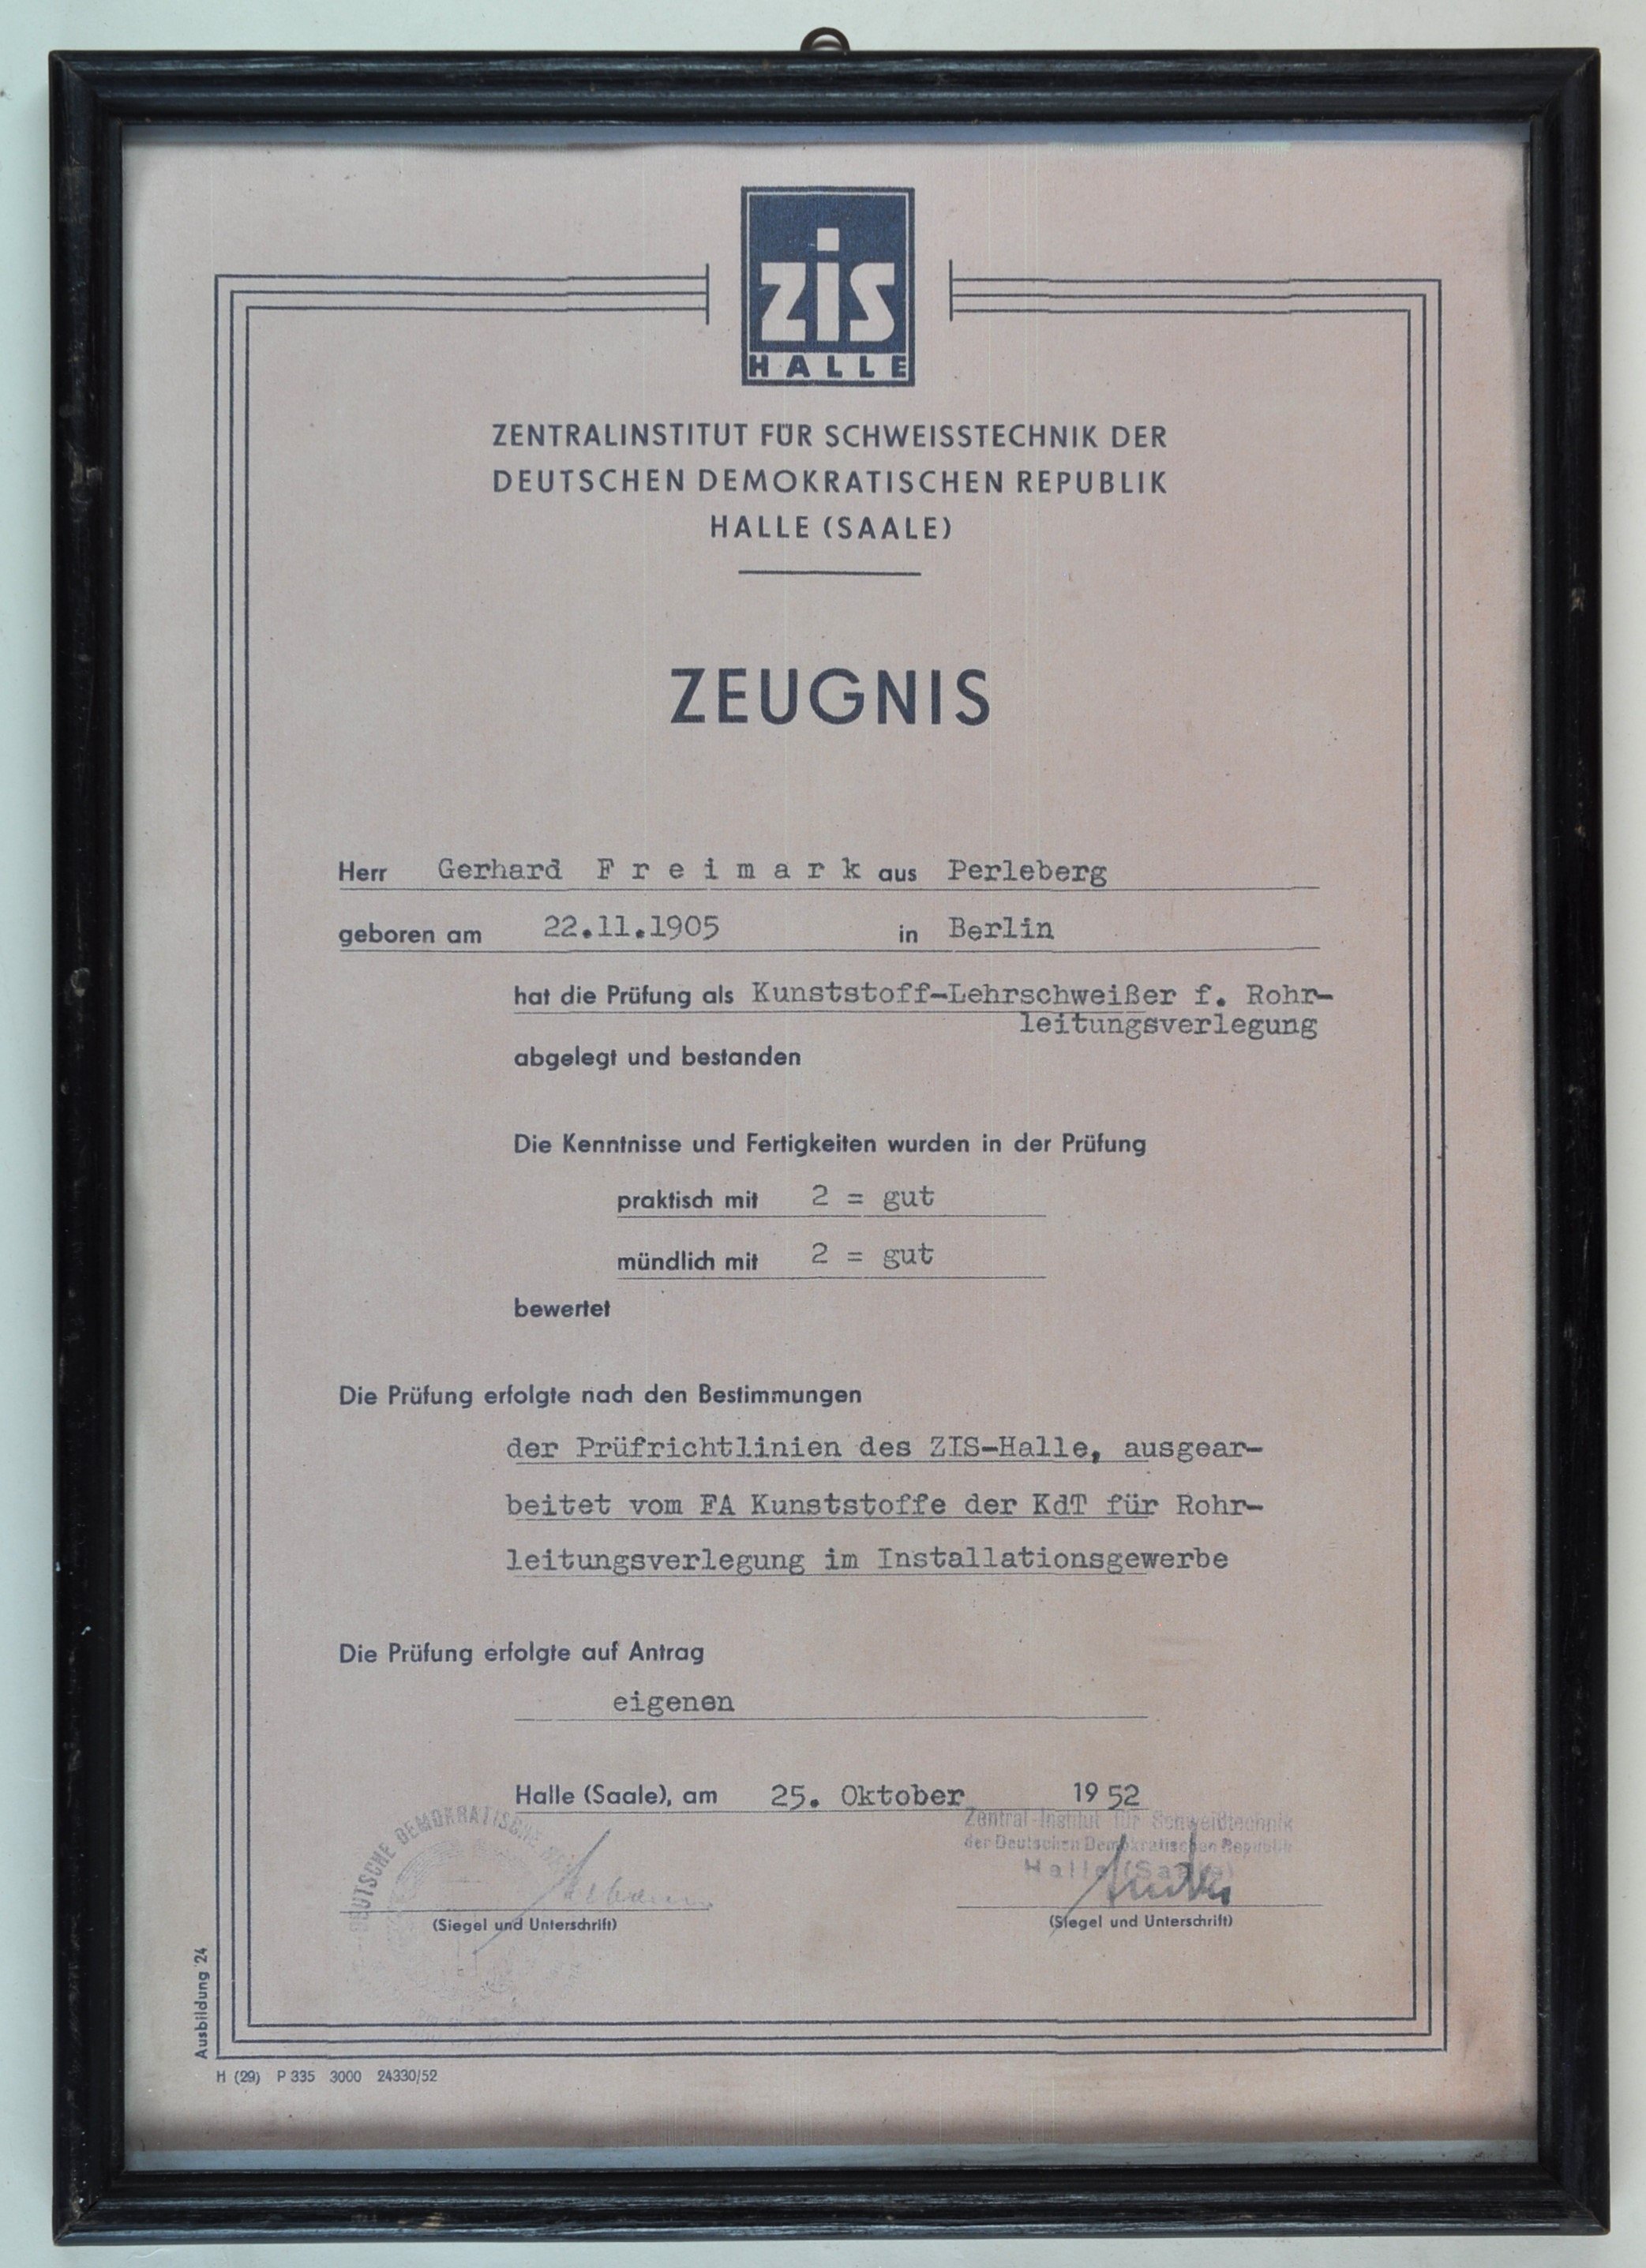 Urkunde des Zentralinstituts für Schweisstechnik für Gerhard Freimark (DDR Geschichtsmuseum im Dokumentationszentrum Perleberg CC BY-SA)